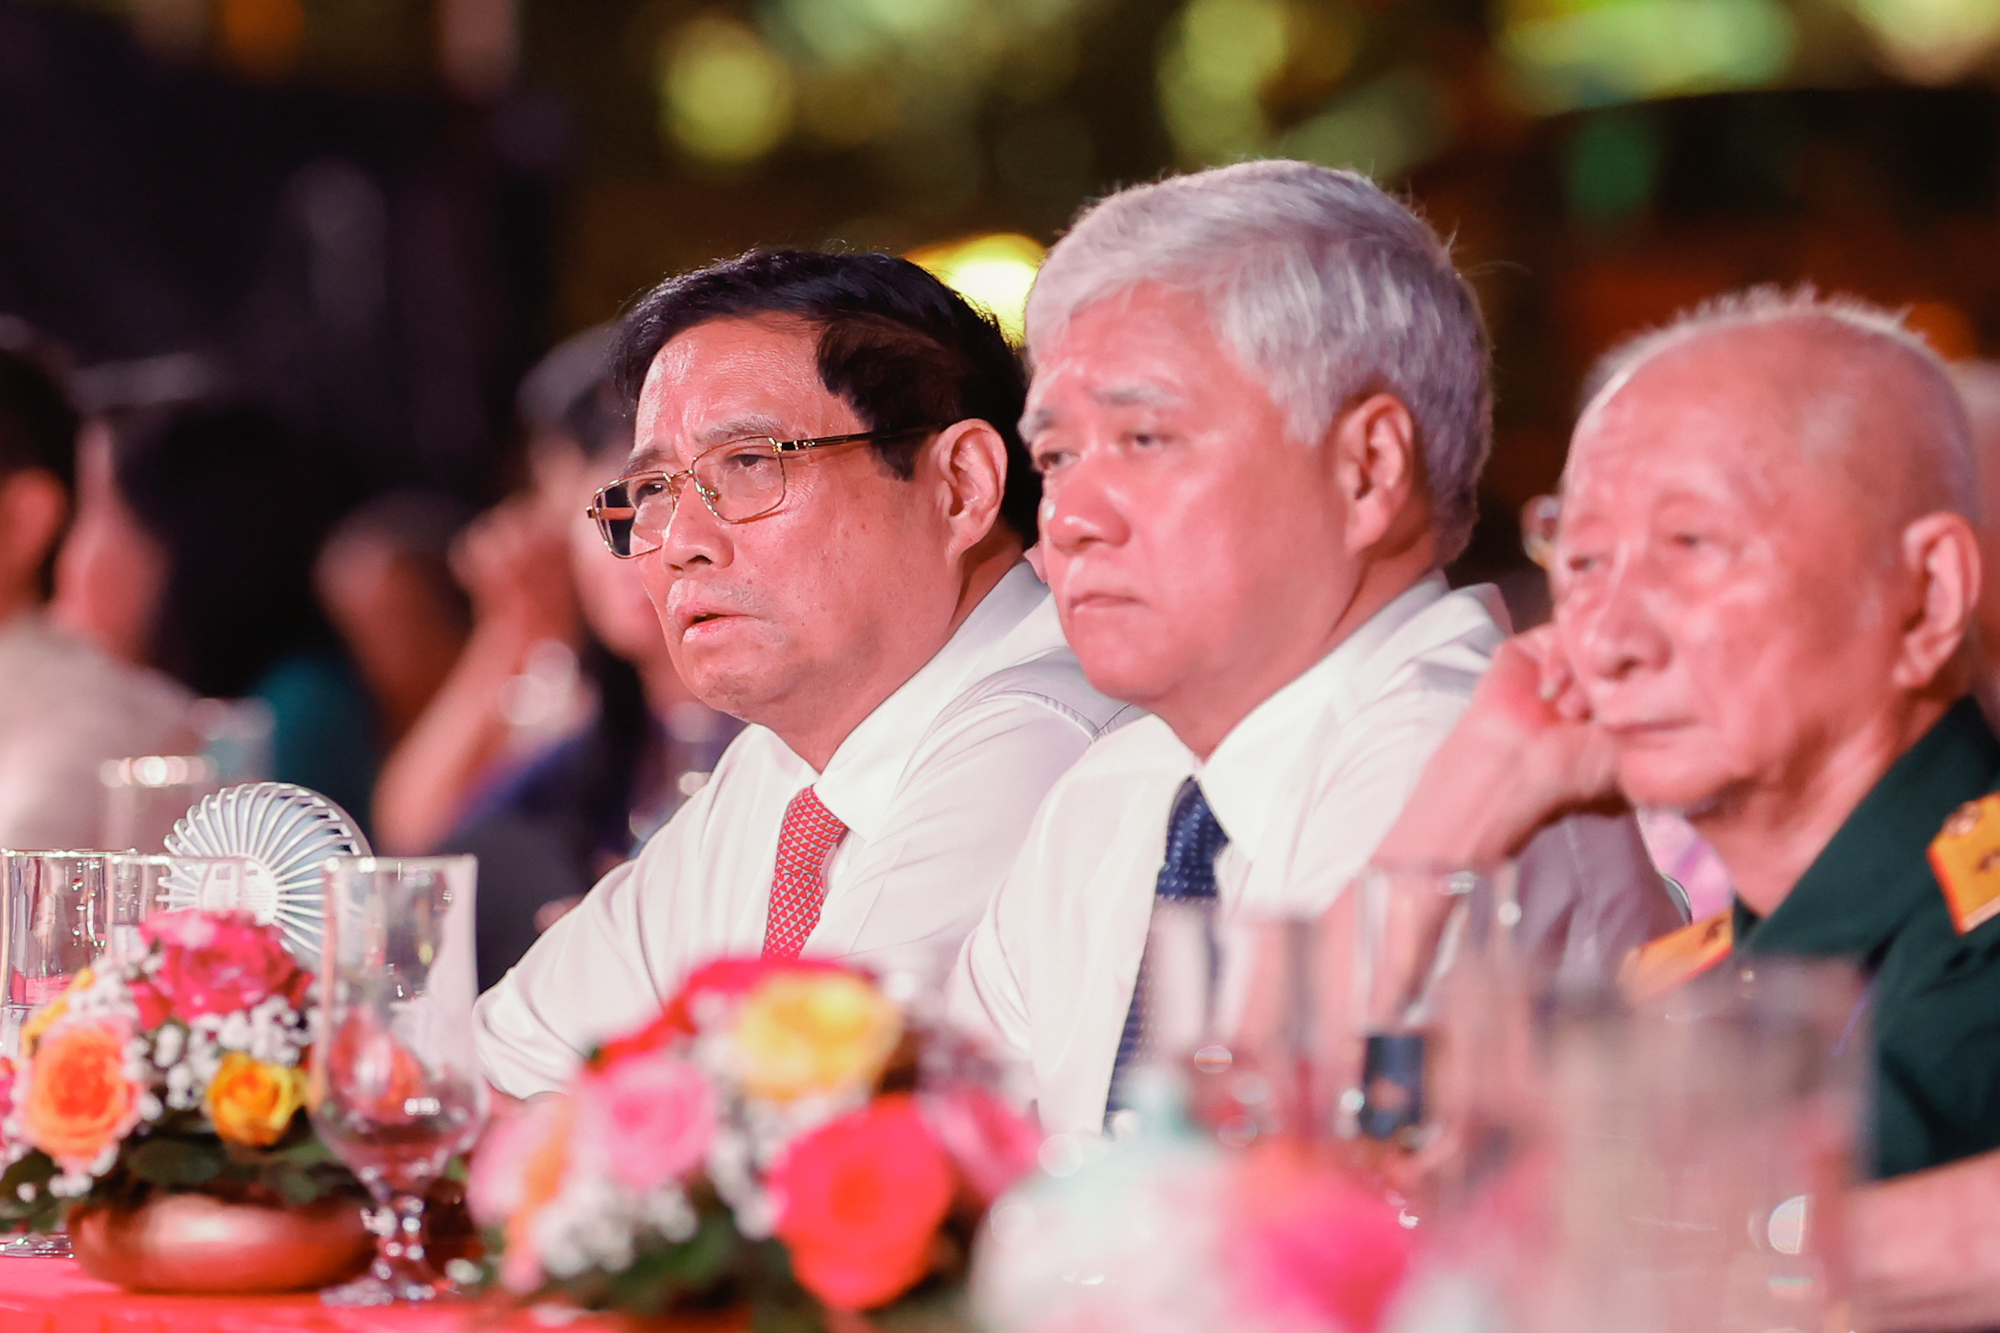 Thủ tướng Phạm Minh Chính và các đại biểu xúc động khi nghe các câu chuyện về Chiến dịch Điện Biên Phủ được chia sẻ trong chương trình cầu truyền hình - Ảnh VGP/Nhật Bắc